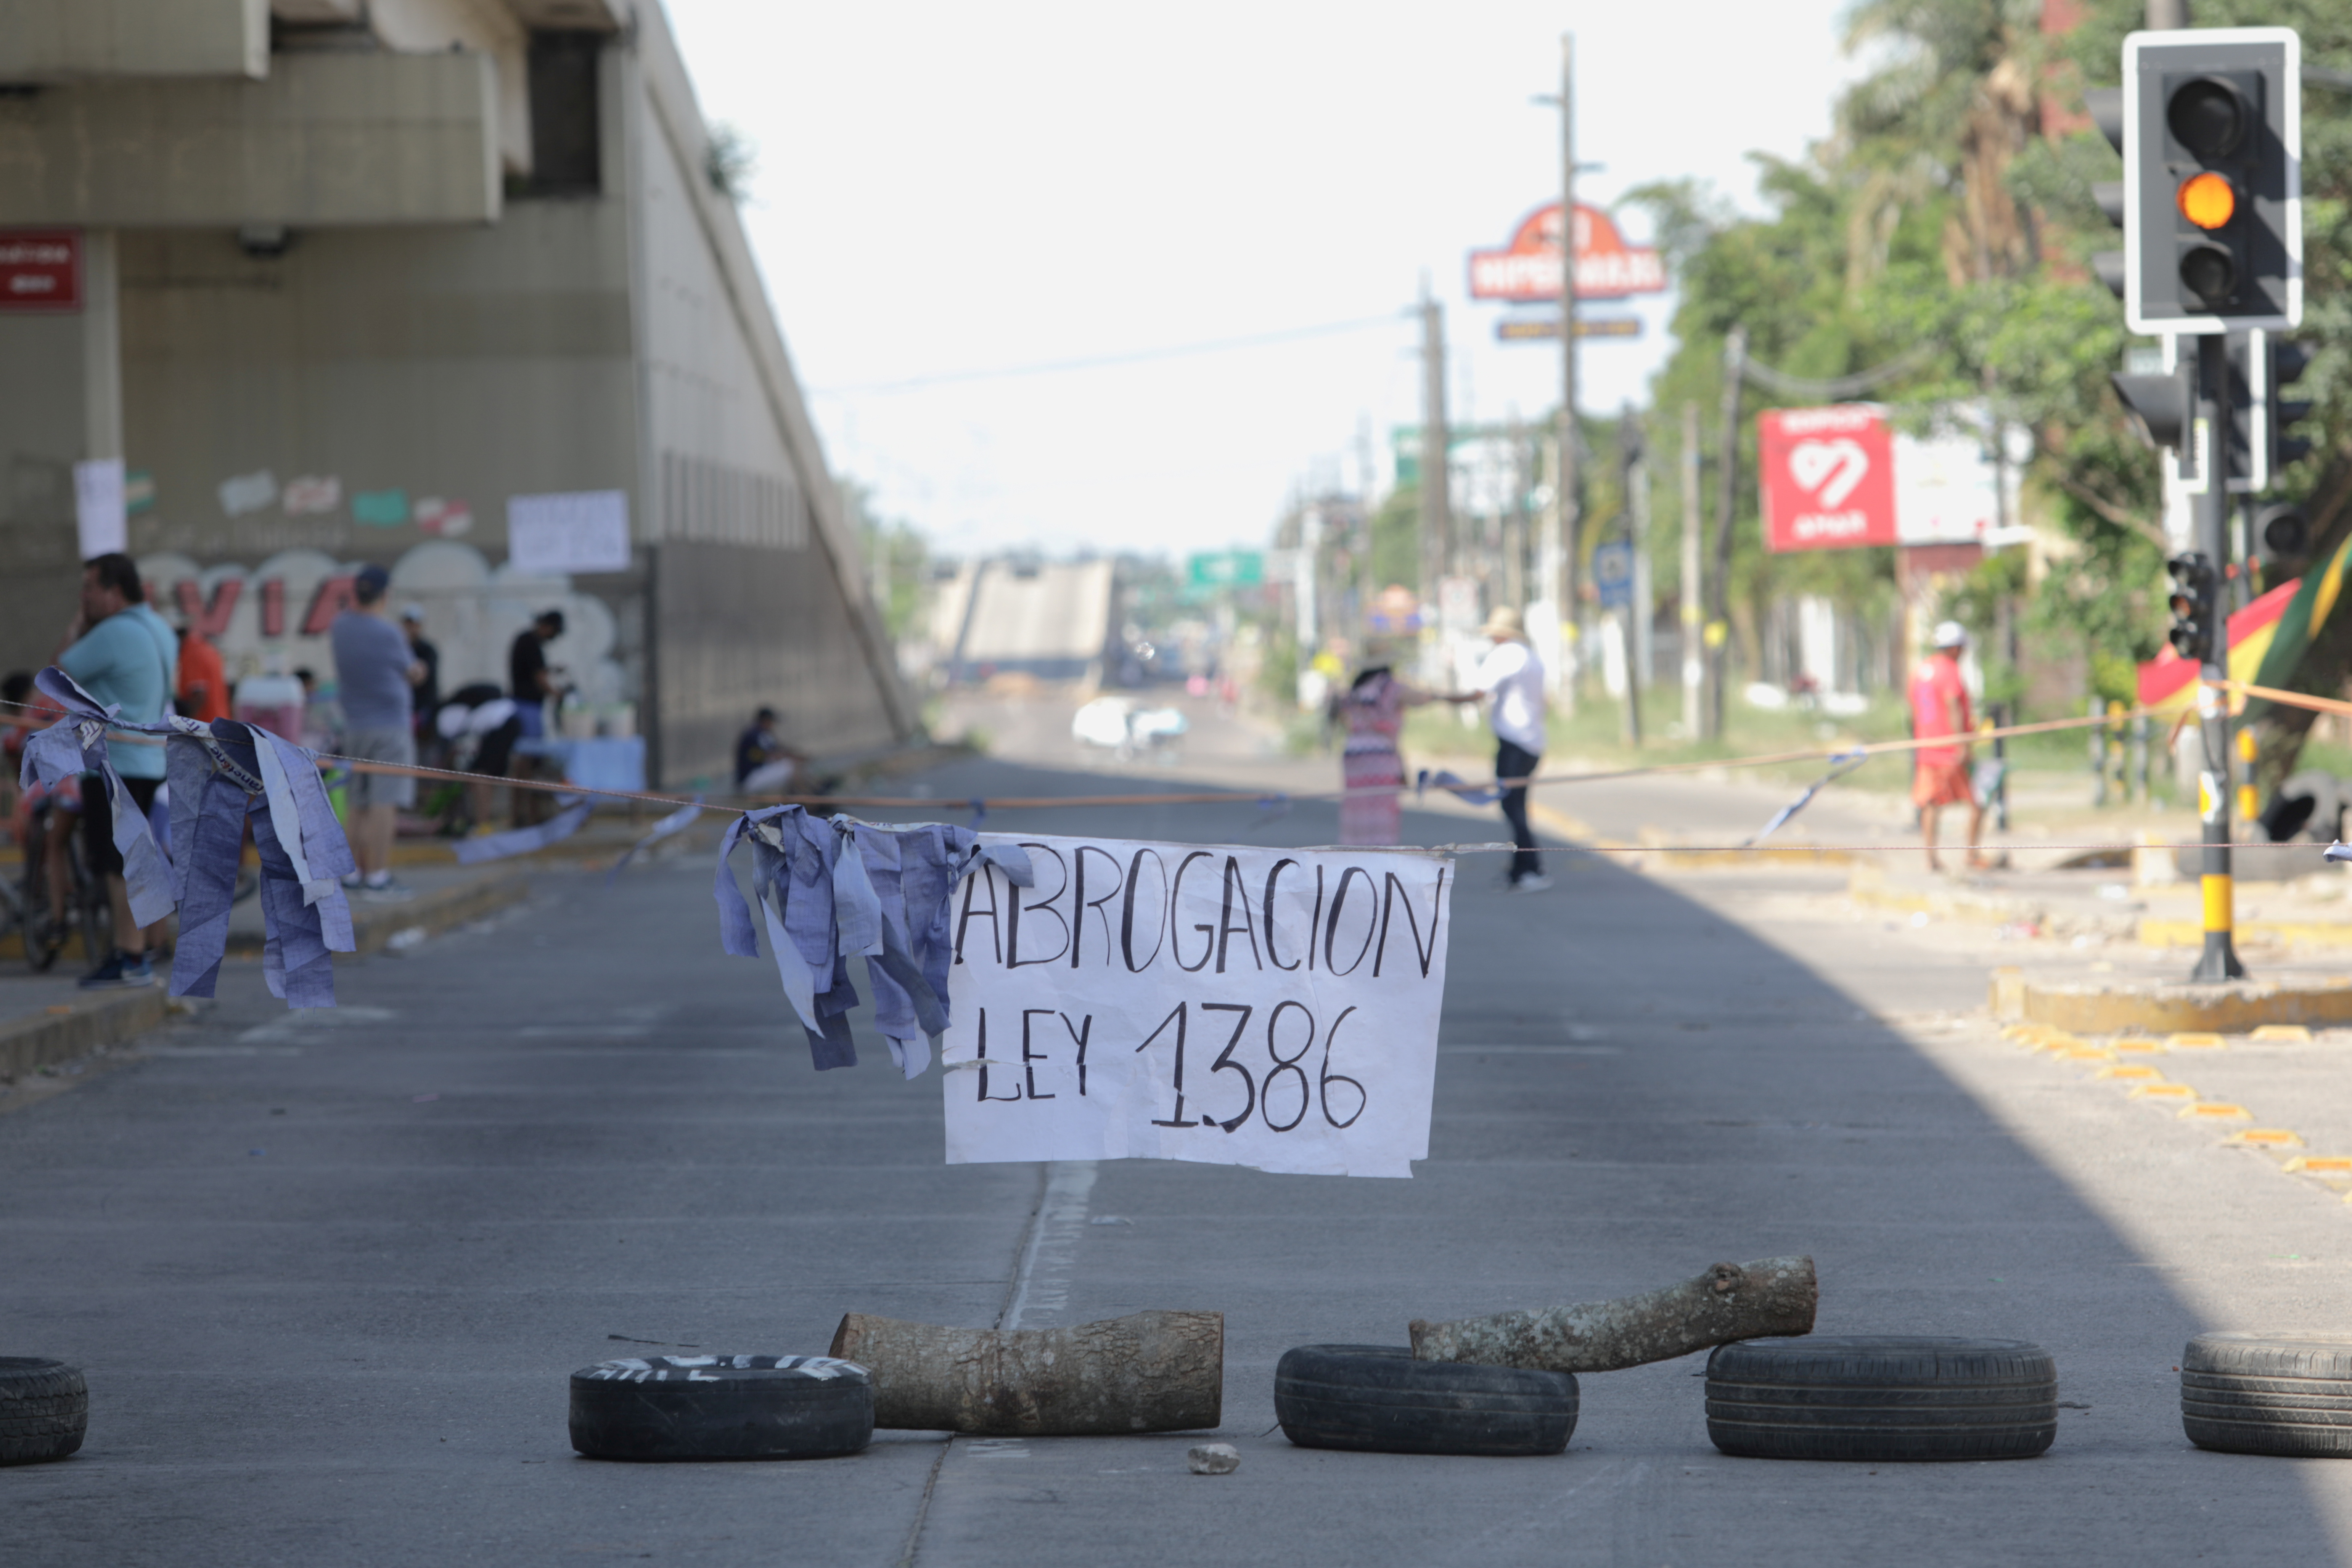 Una calle es bloqueada con un cartel que exige la derogación de una legislación que, según los grupos de oposición, golpeará la propiedad privada y centralizará el poder político en manos del partido socialista gobernante, en Santa Cruz (Reuters)